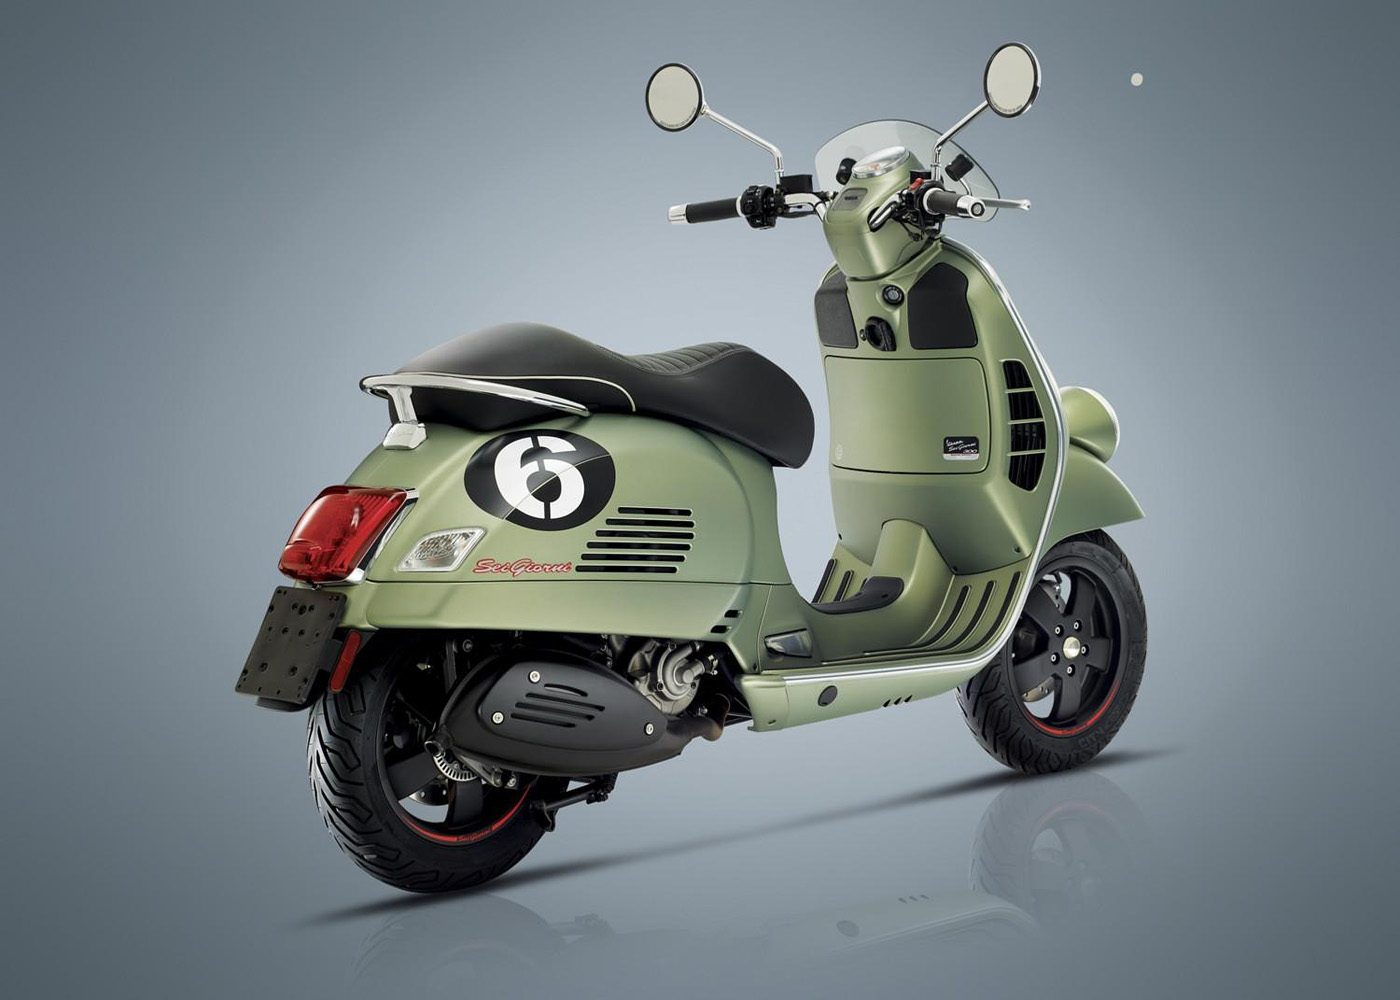 Modern Vespa 'Sei Giorni' - New Generation of 50's Iconic Scooter